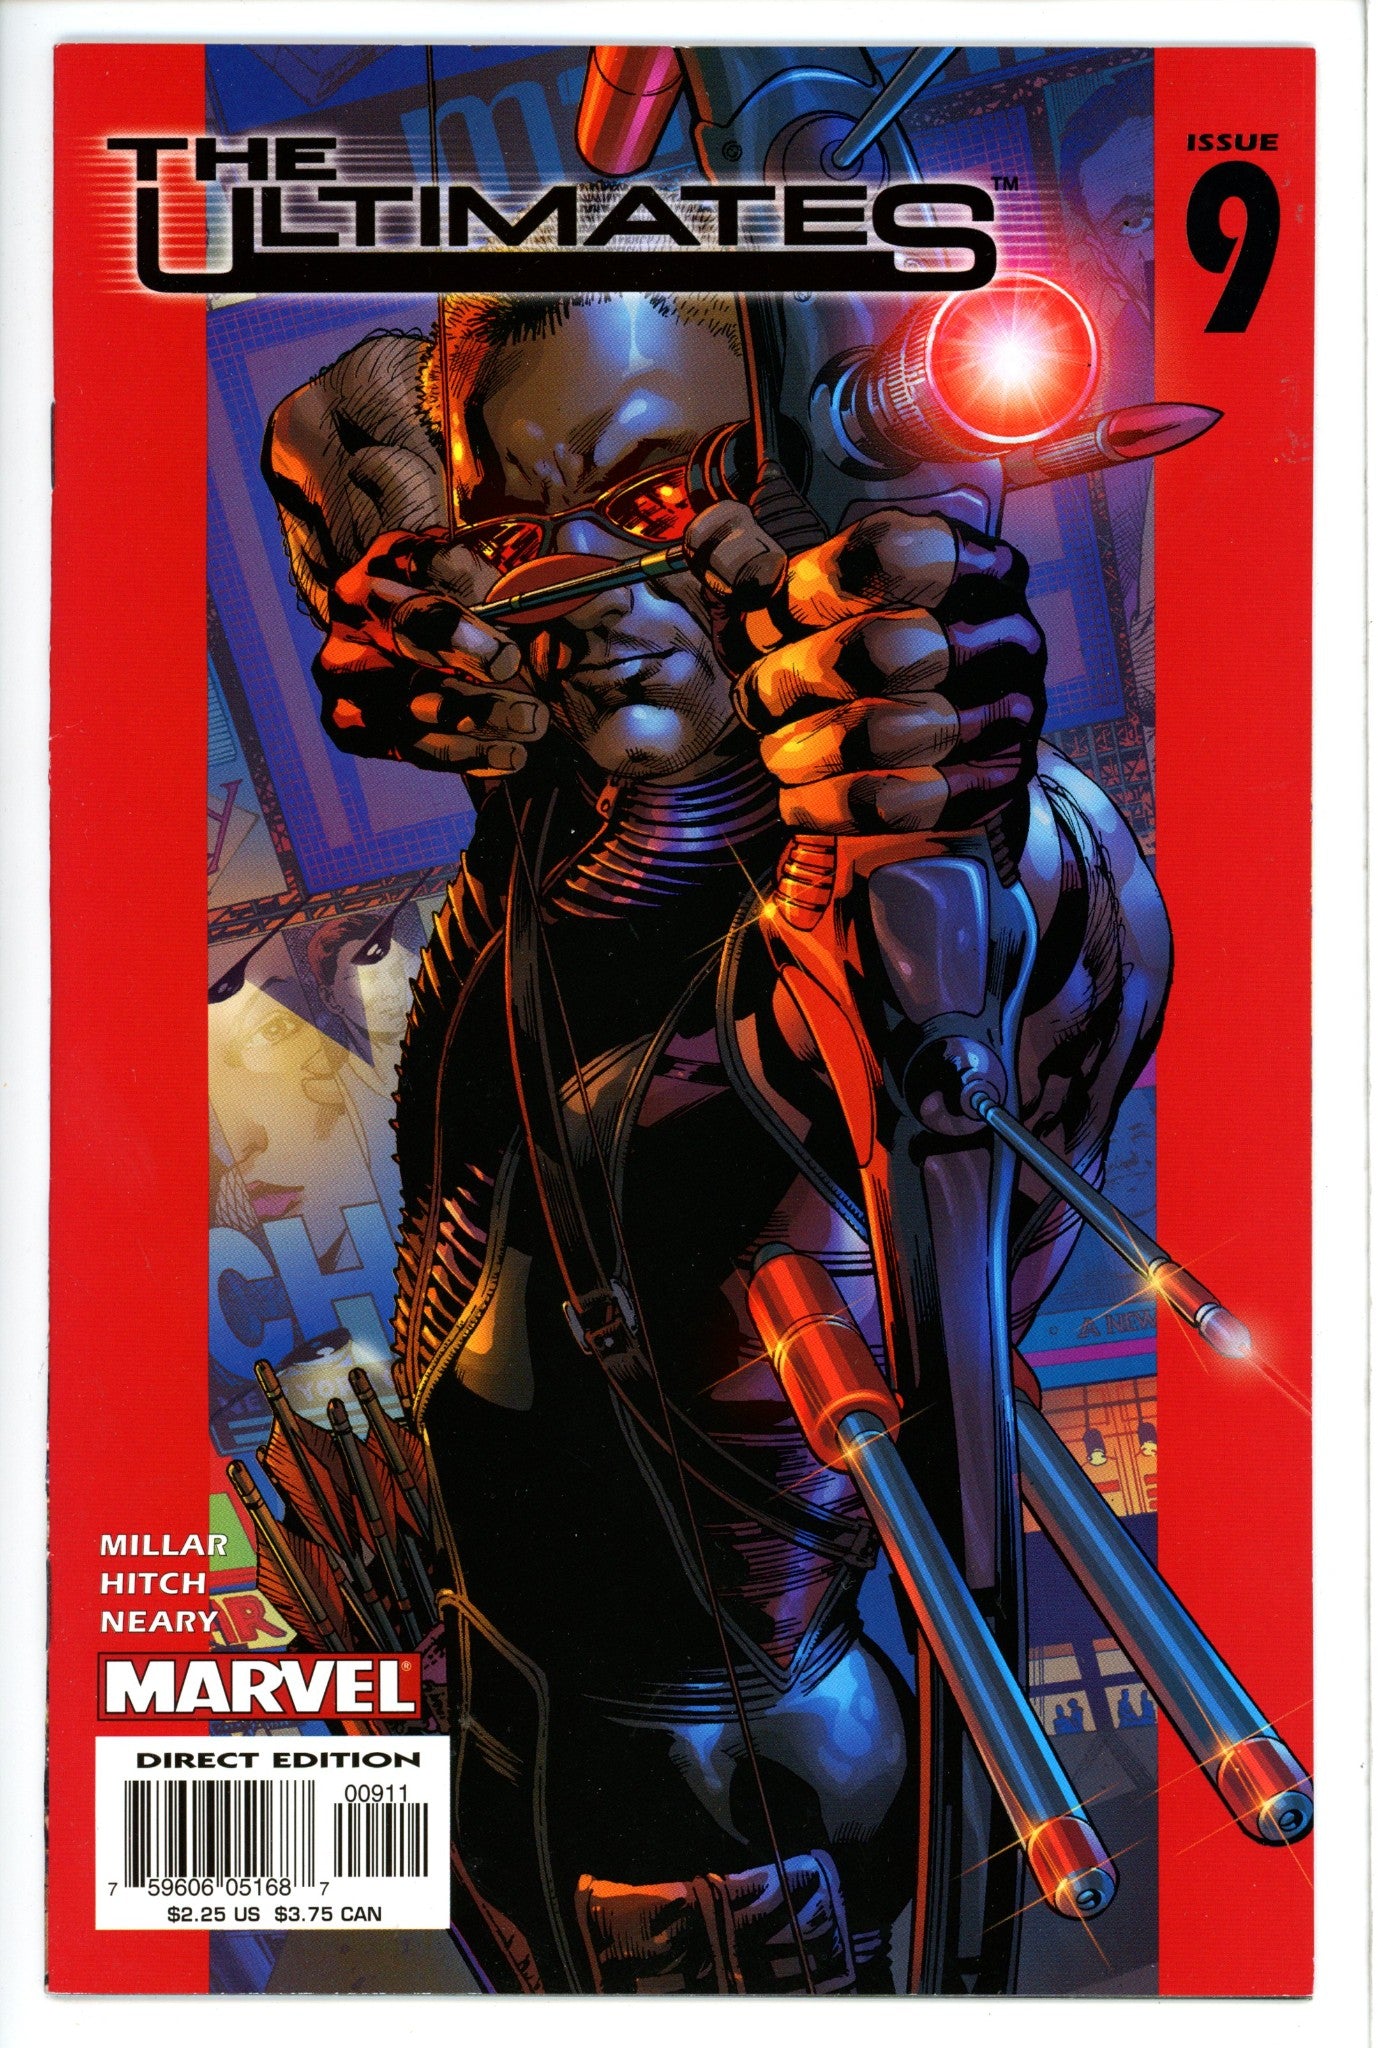 The Ultimates Vol 1 9-Marvel-CaptCan Comics Inc